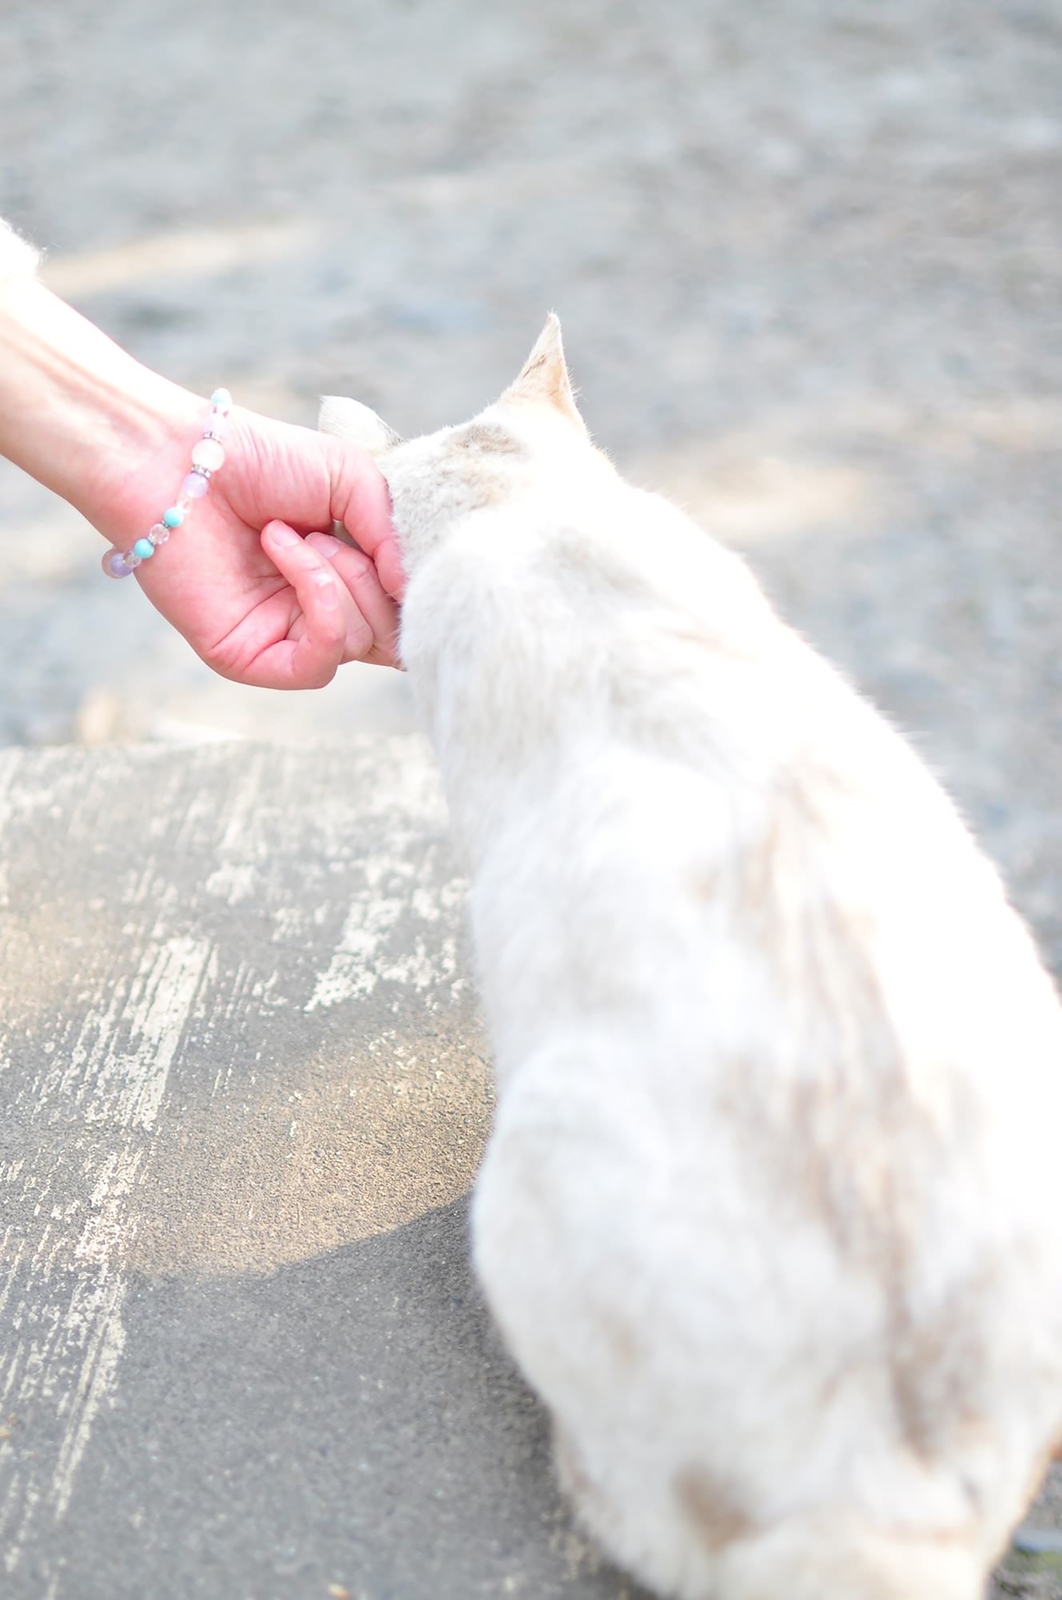 関西 哲学の道に猫カフェ はんなり京都旅でおすすめの猫スポット 猫の総合情報サイト ペットスマイルニュースforネコちゃん